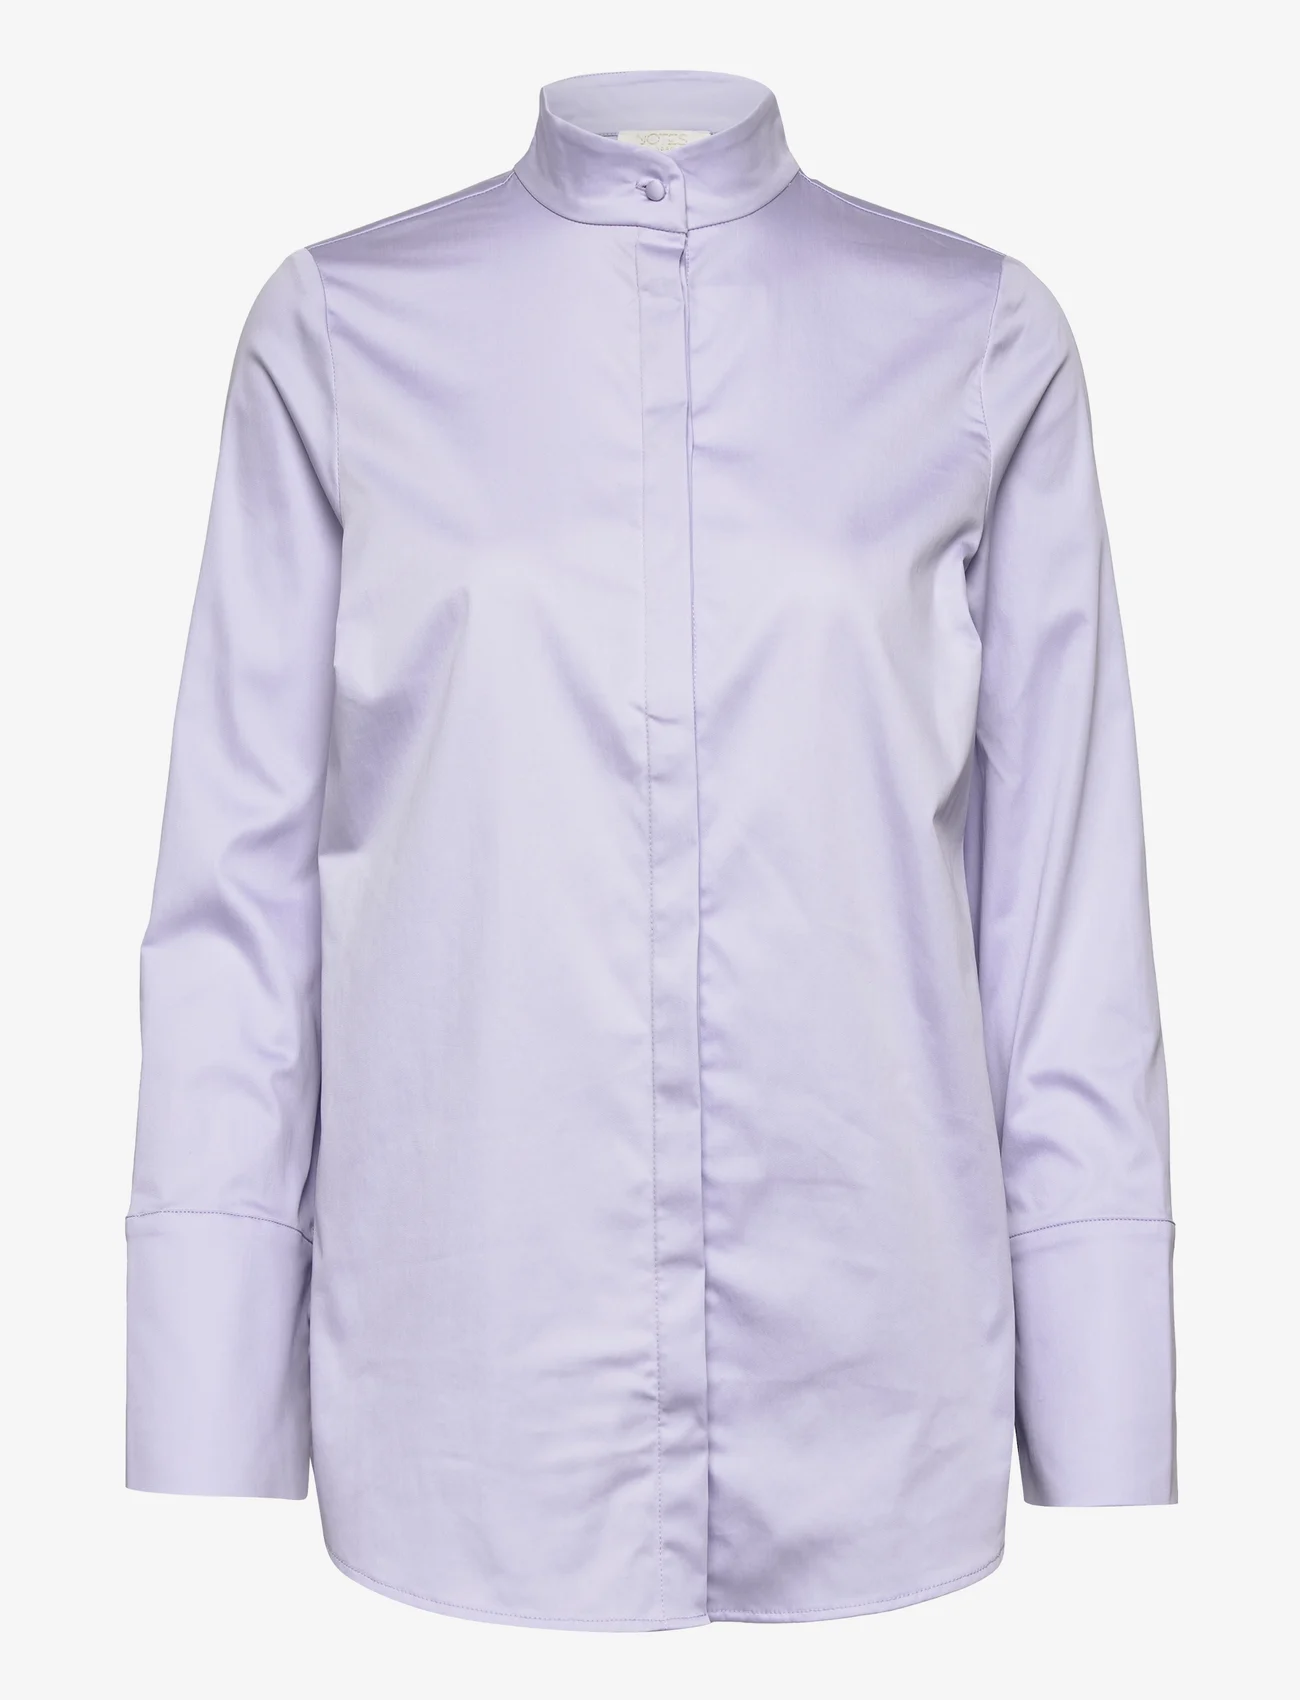 Notes du Nord - Davina Shirt - långärmade skjortor - lavender - 0